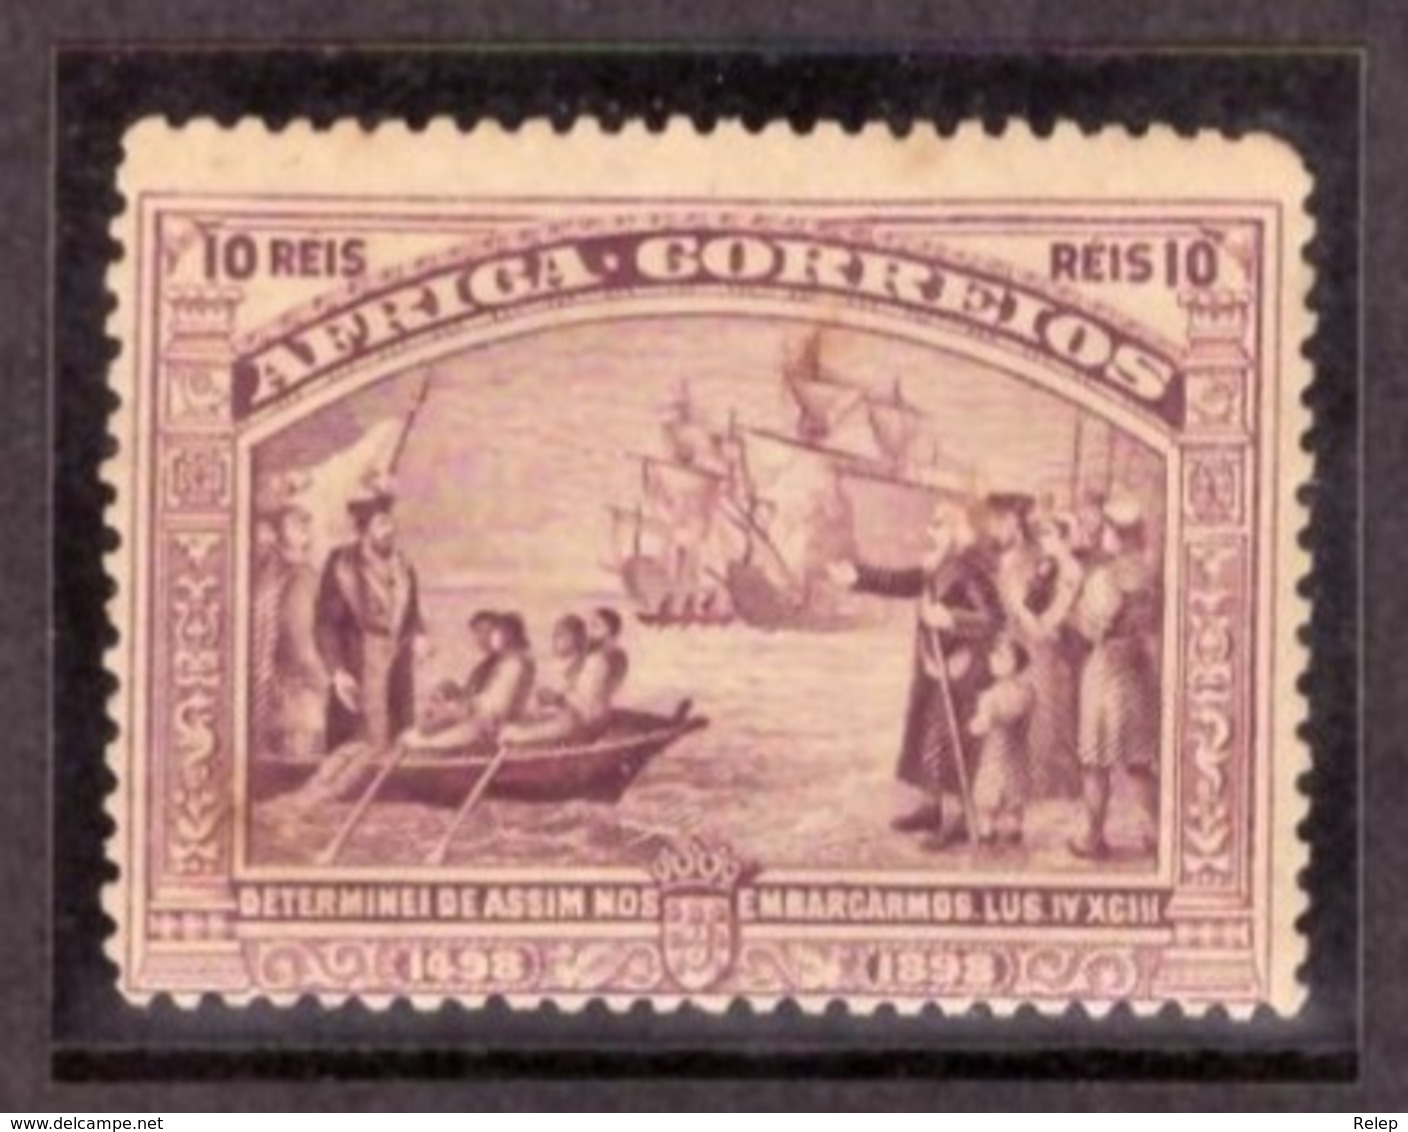 Africa Portuguesa  1898 - IV Cent Descoberta Do Caminho Marítimo Para A India N° 3 / 10Rs - Ver Scan - - Africa Portoghese